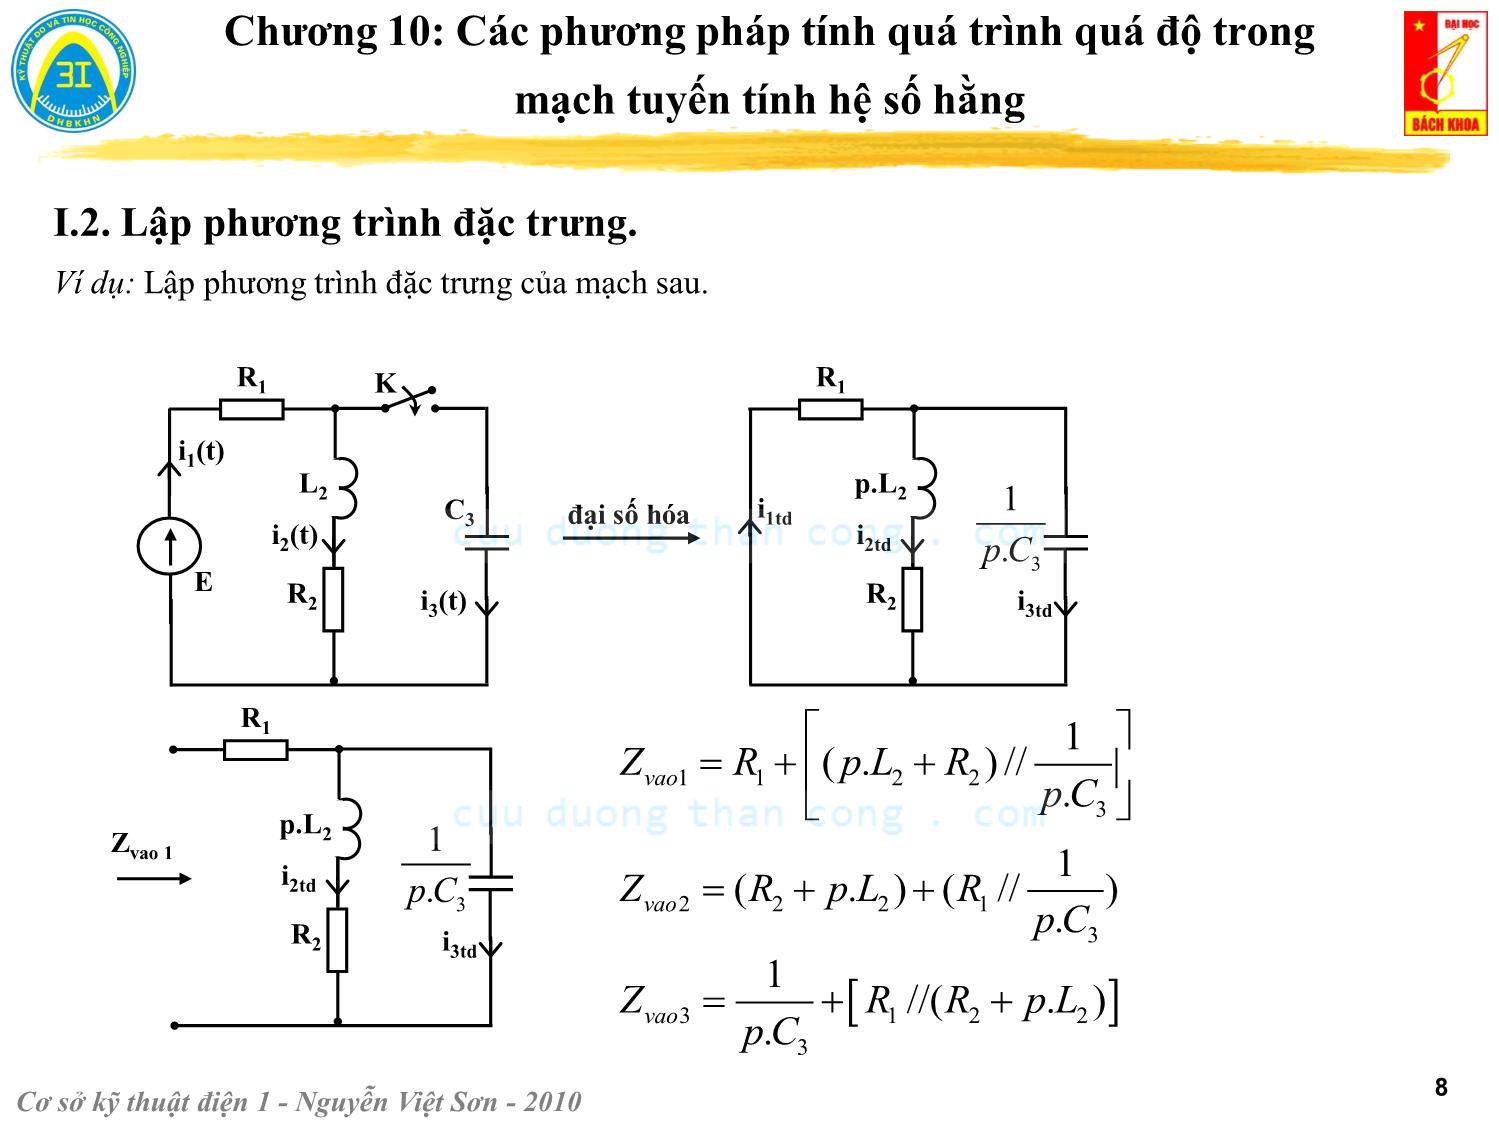 Bài giảng Kỹ thuật điện 1 - Chương 10: Các phương pháp tính quá trình quá độ trong mạch điện tuyến tính - Nguyễn Việt Sơn trang 8